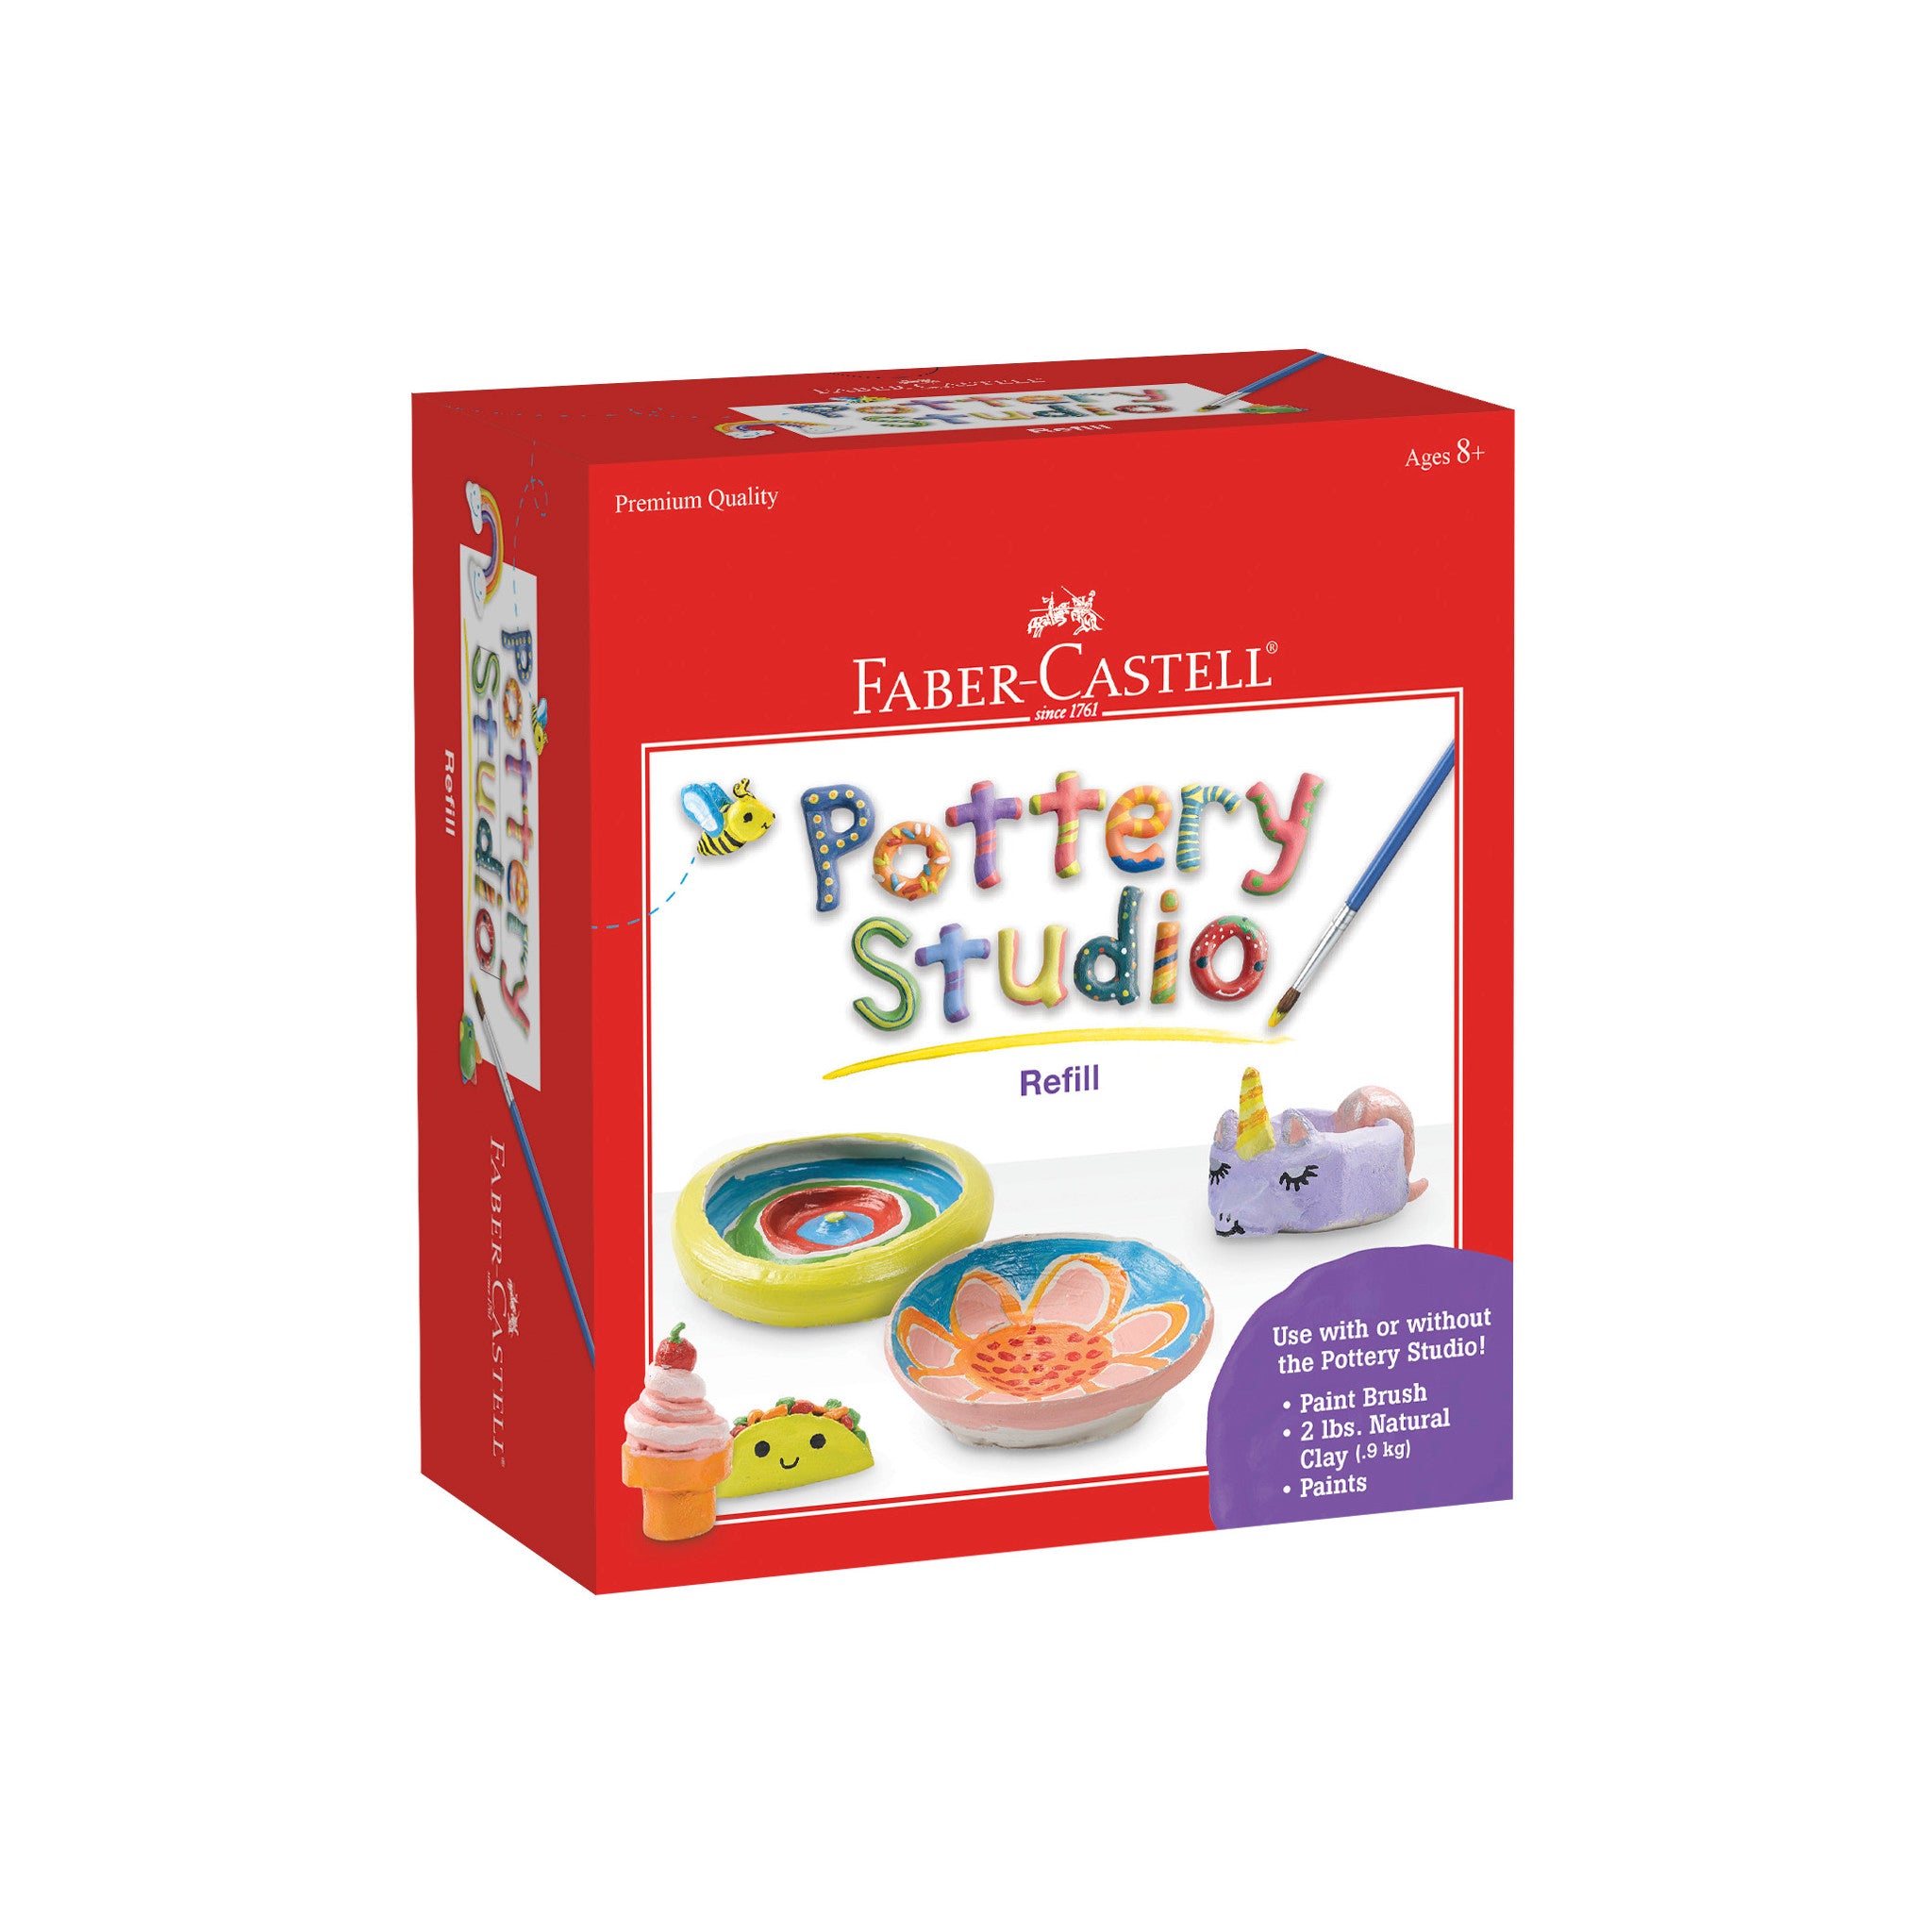 Faber-Castell Do Art Pottery Studio Wheel Kit for Kids for sale online